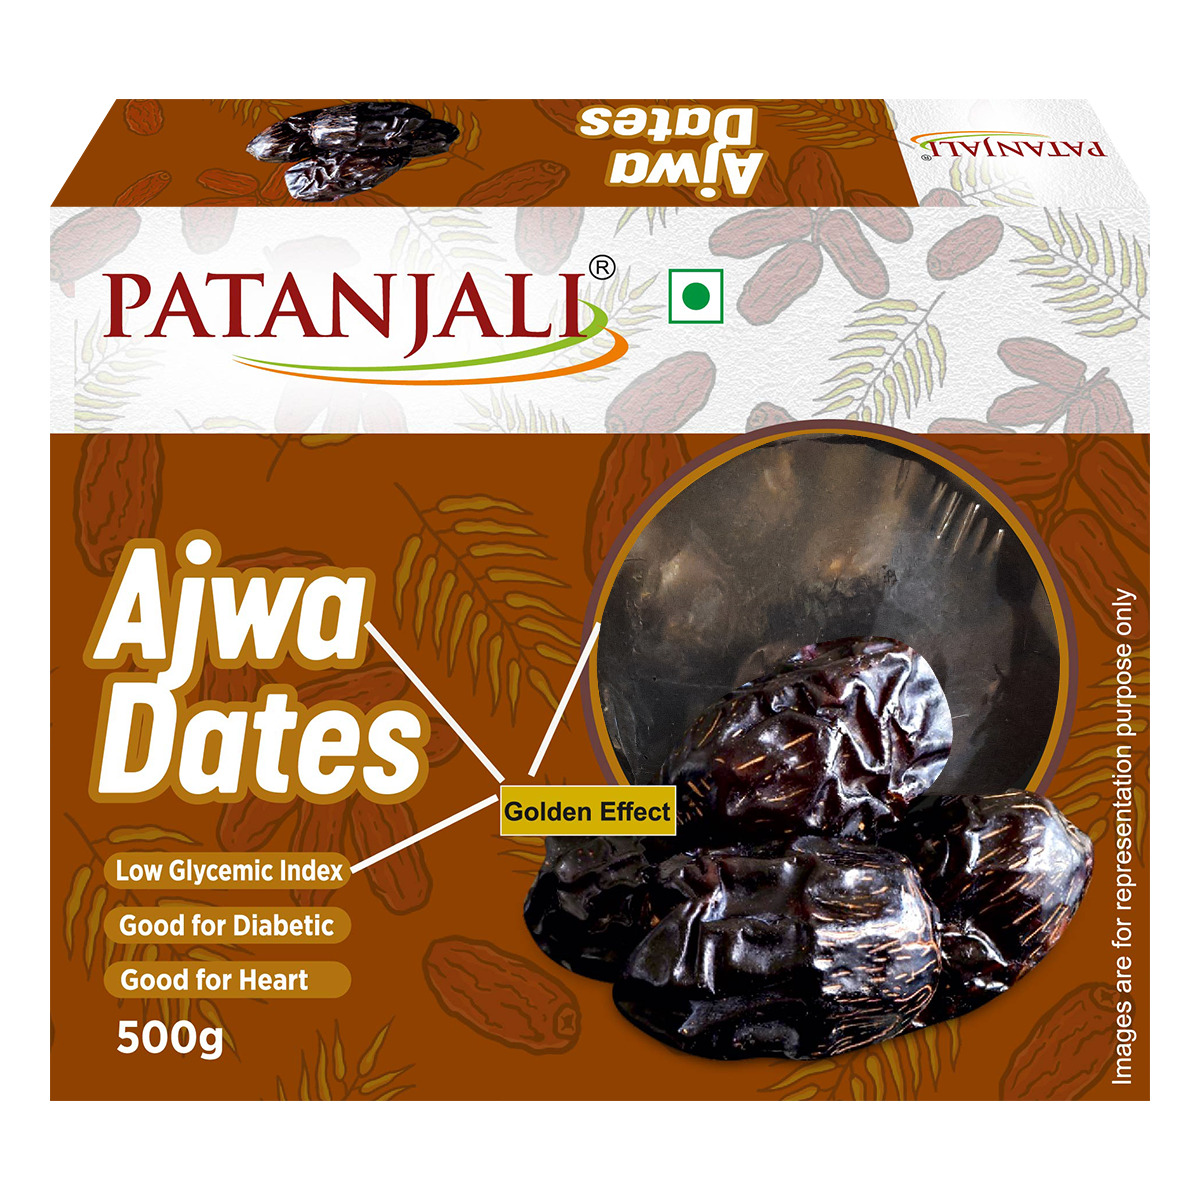 Patanjali Dates (Ajwa)